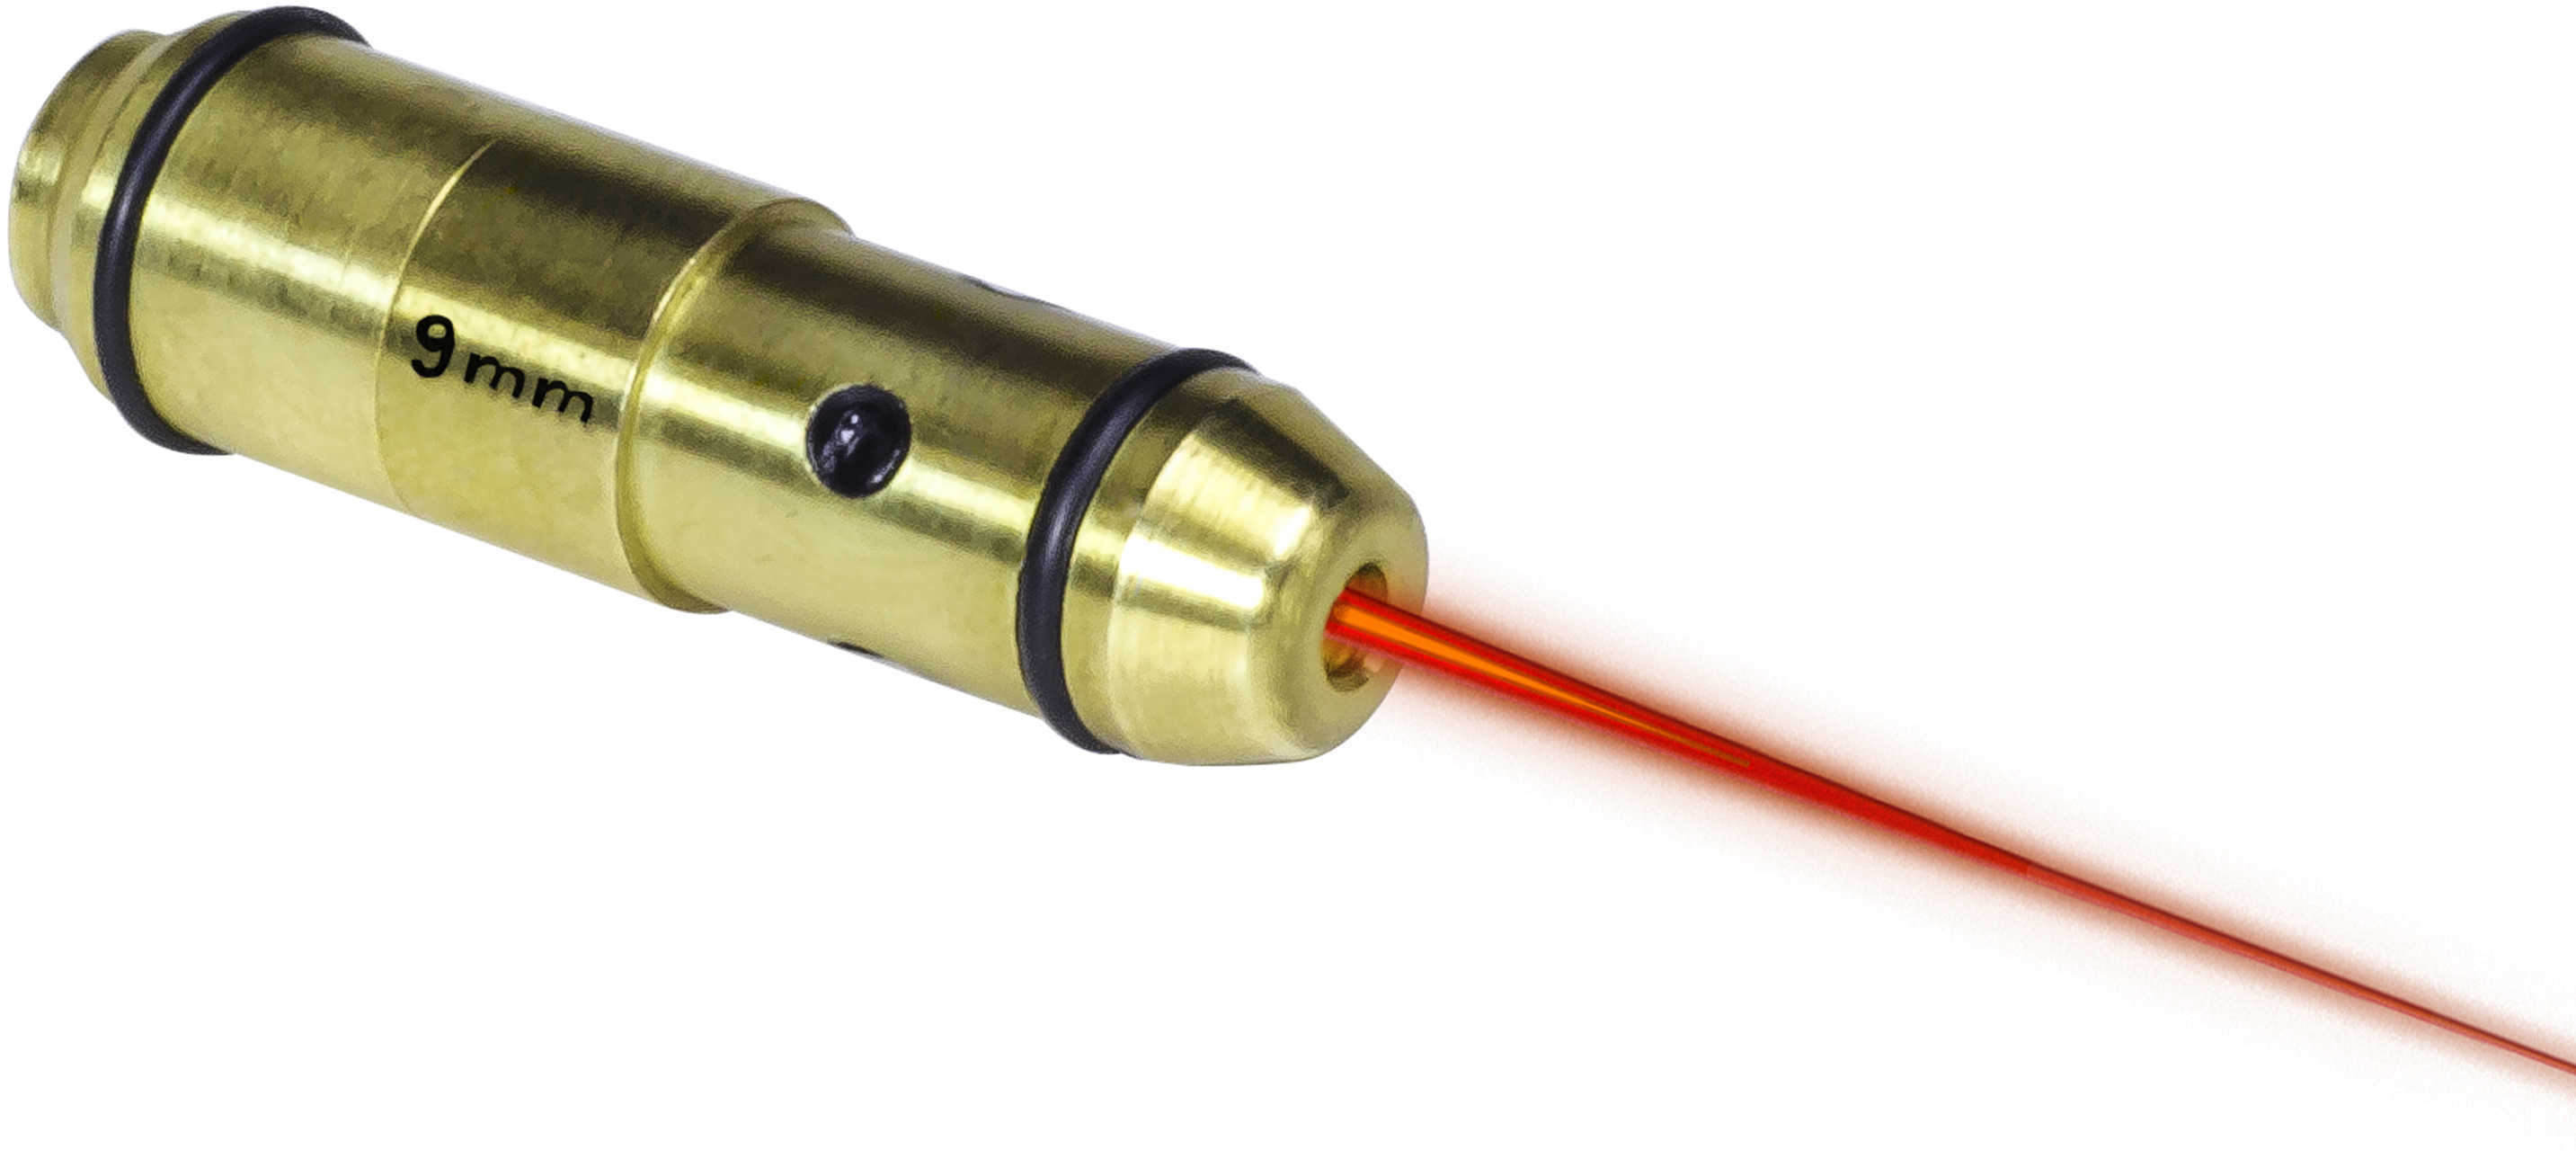 Laserlyte Laser Trainer Handgun Cartridge 9mm Luger